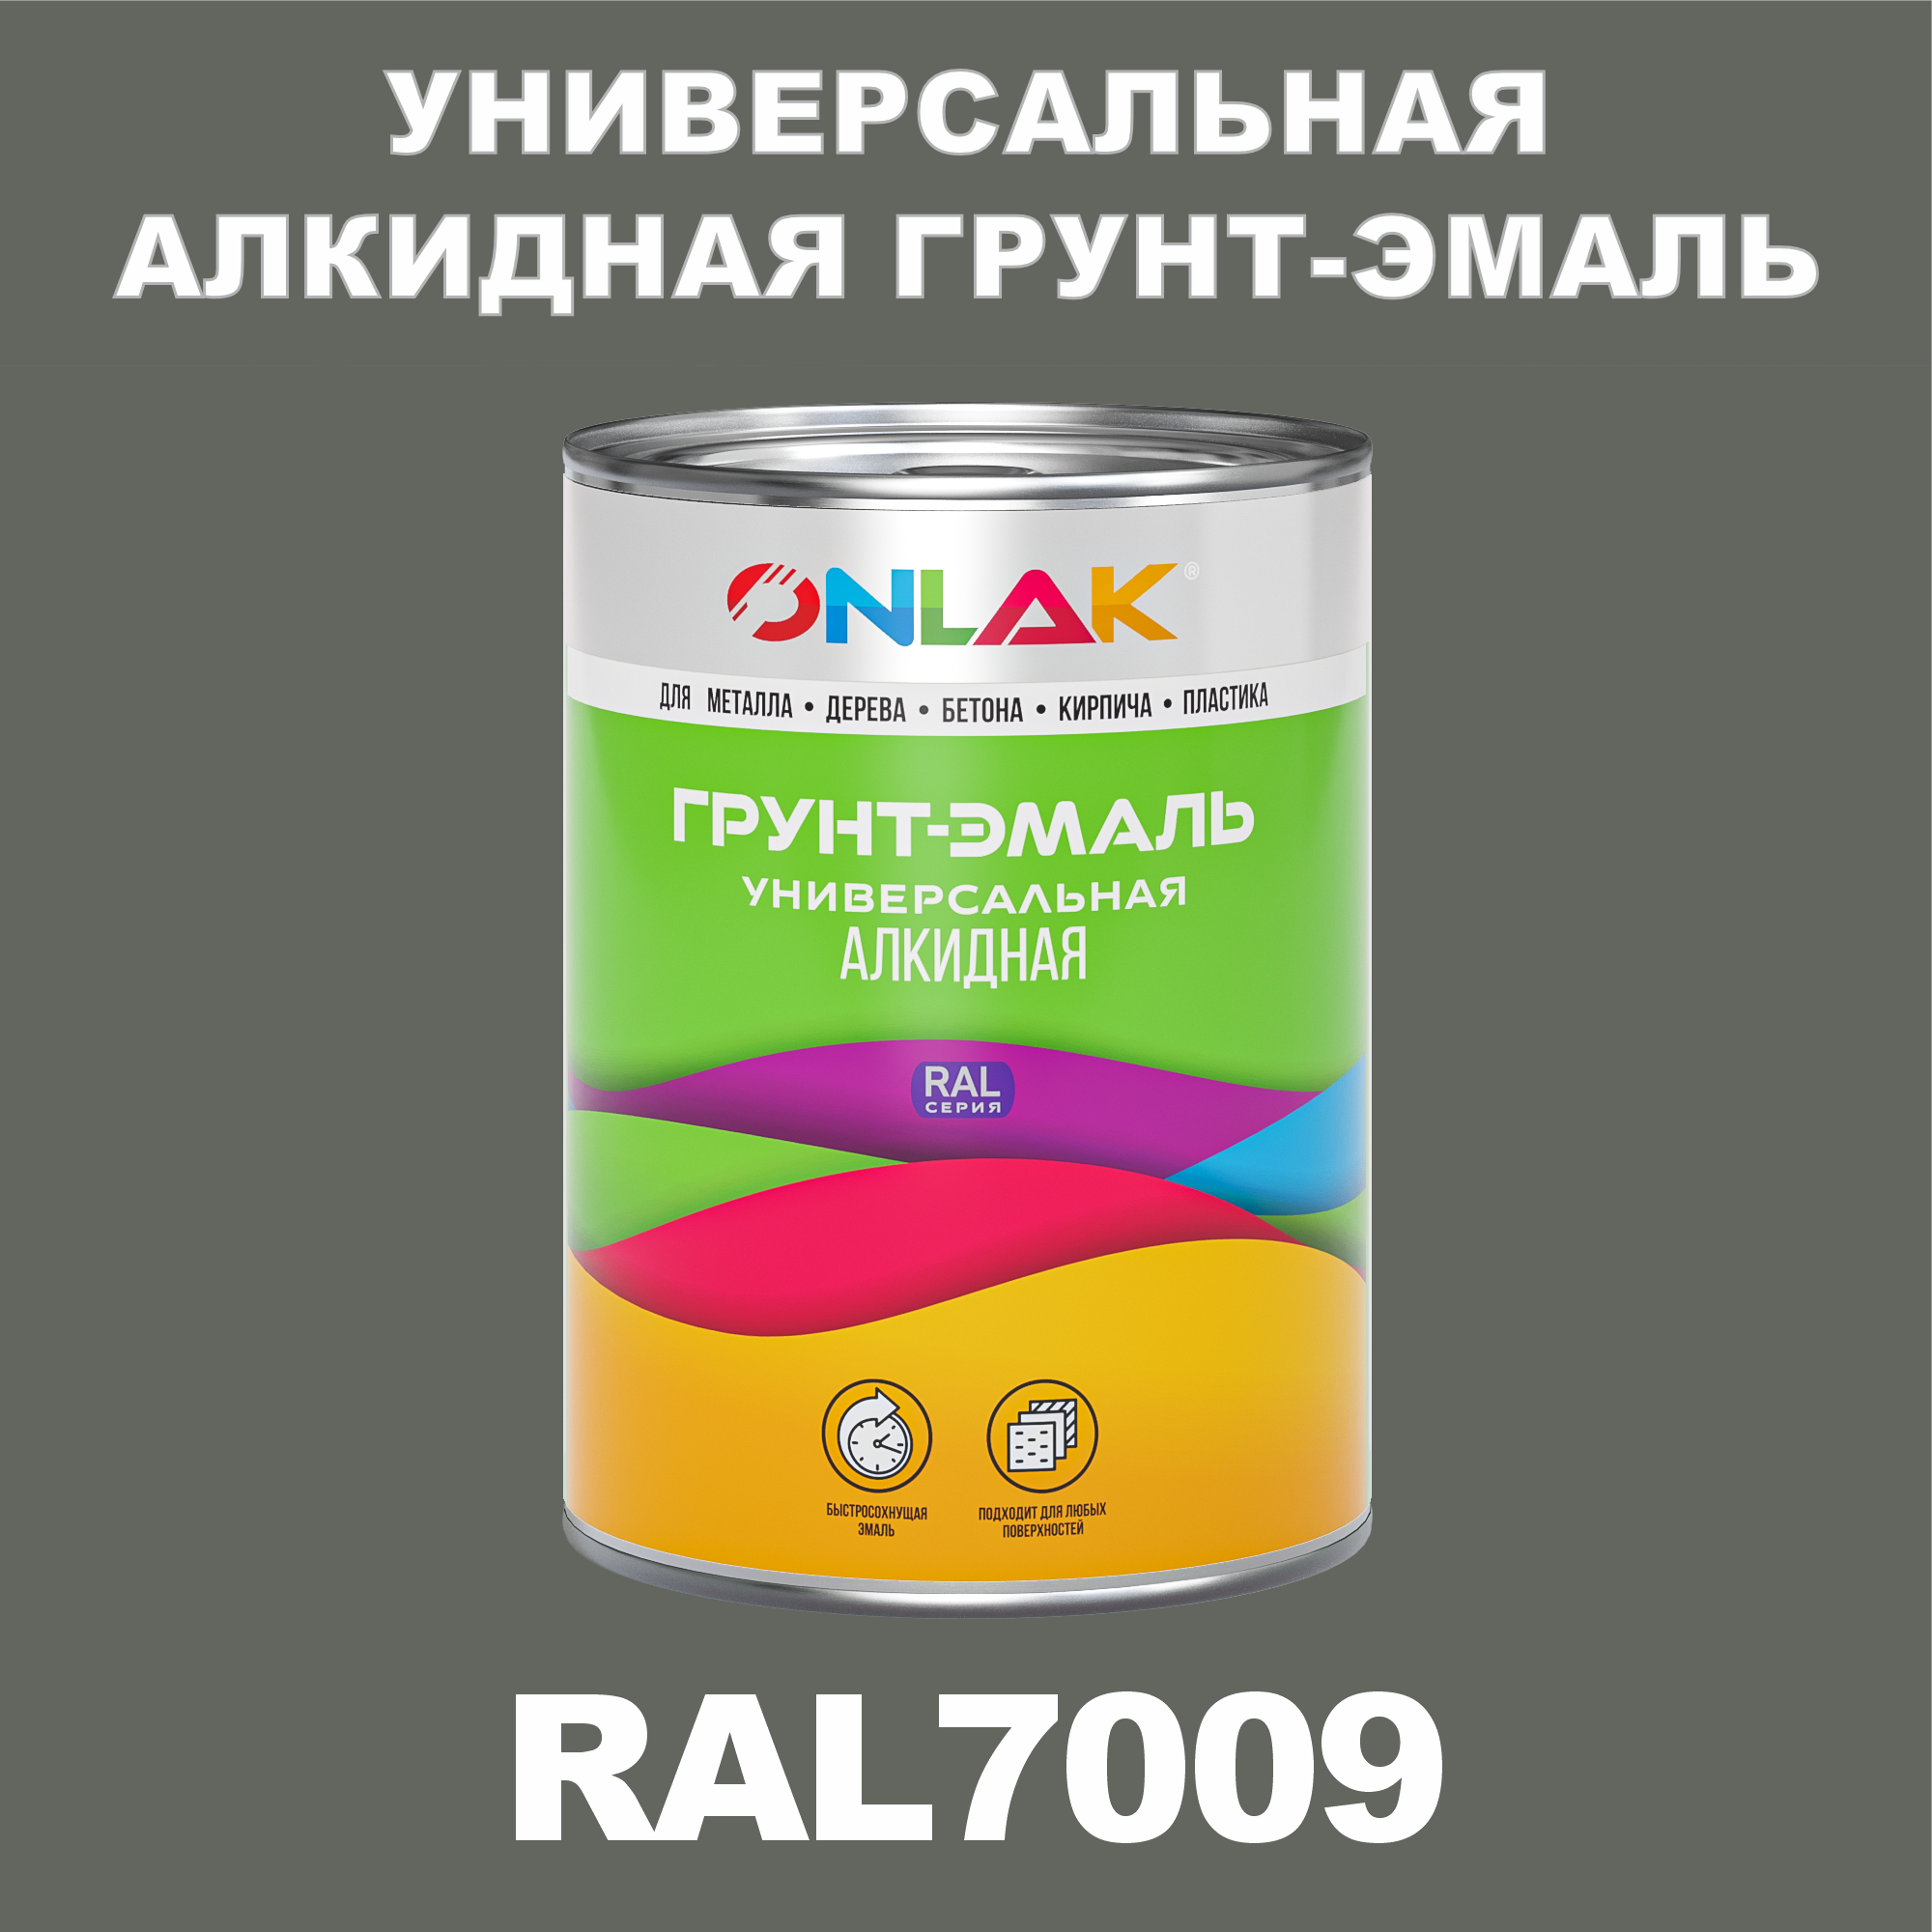 Грунт-эмаль ONLAK 1К RAL7009 антикоррозионная алкидная по металлу по ржавчине 1 кг термостойкая антикоррозионная эмаль texon